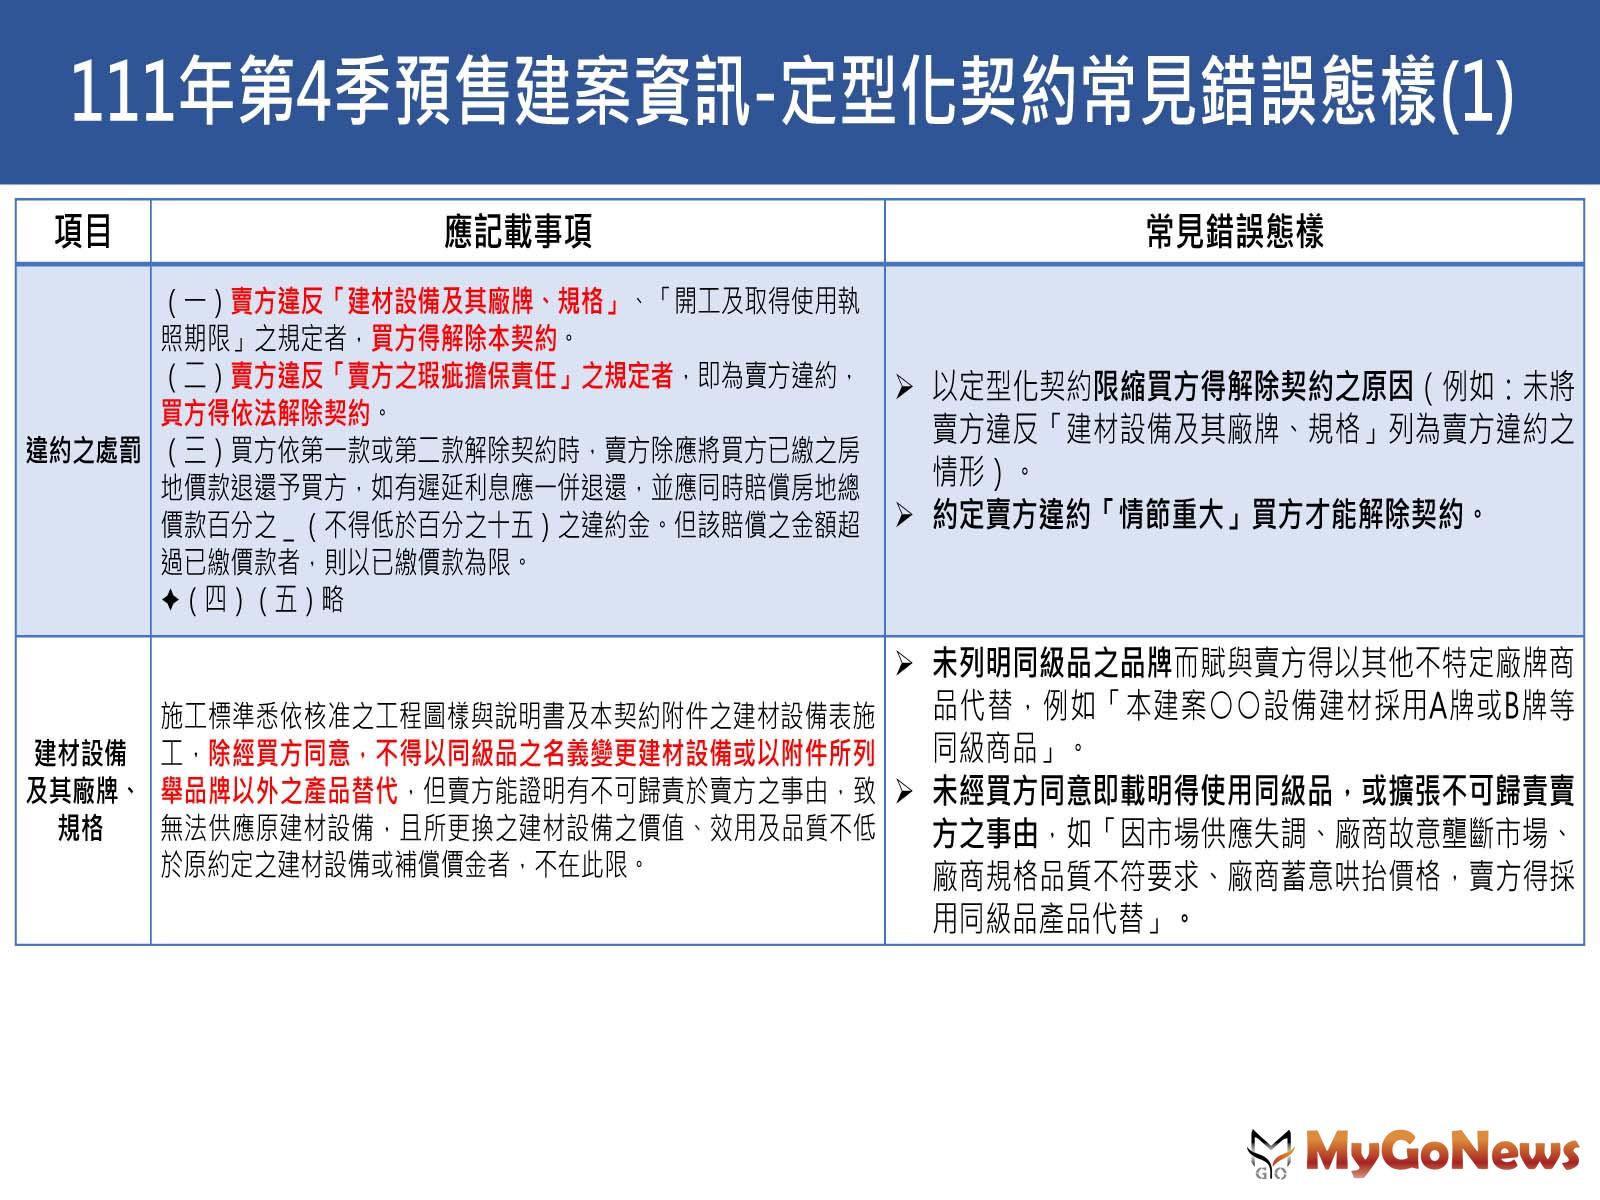 台北市2022年第4季預售建案資訊動態季報摘要05 MyGoNews房地產新聞 區域情報